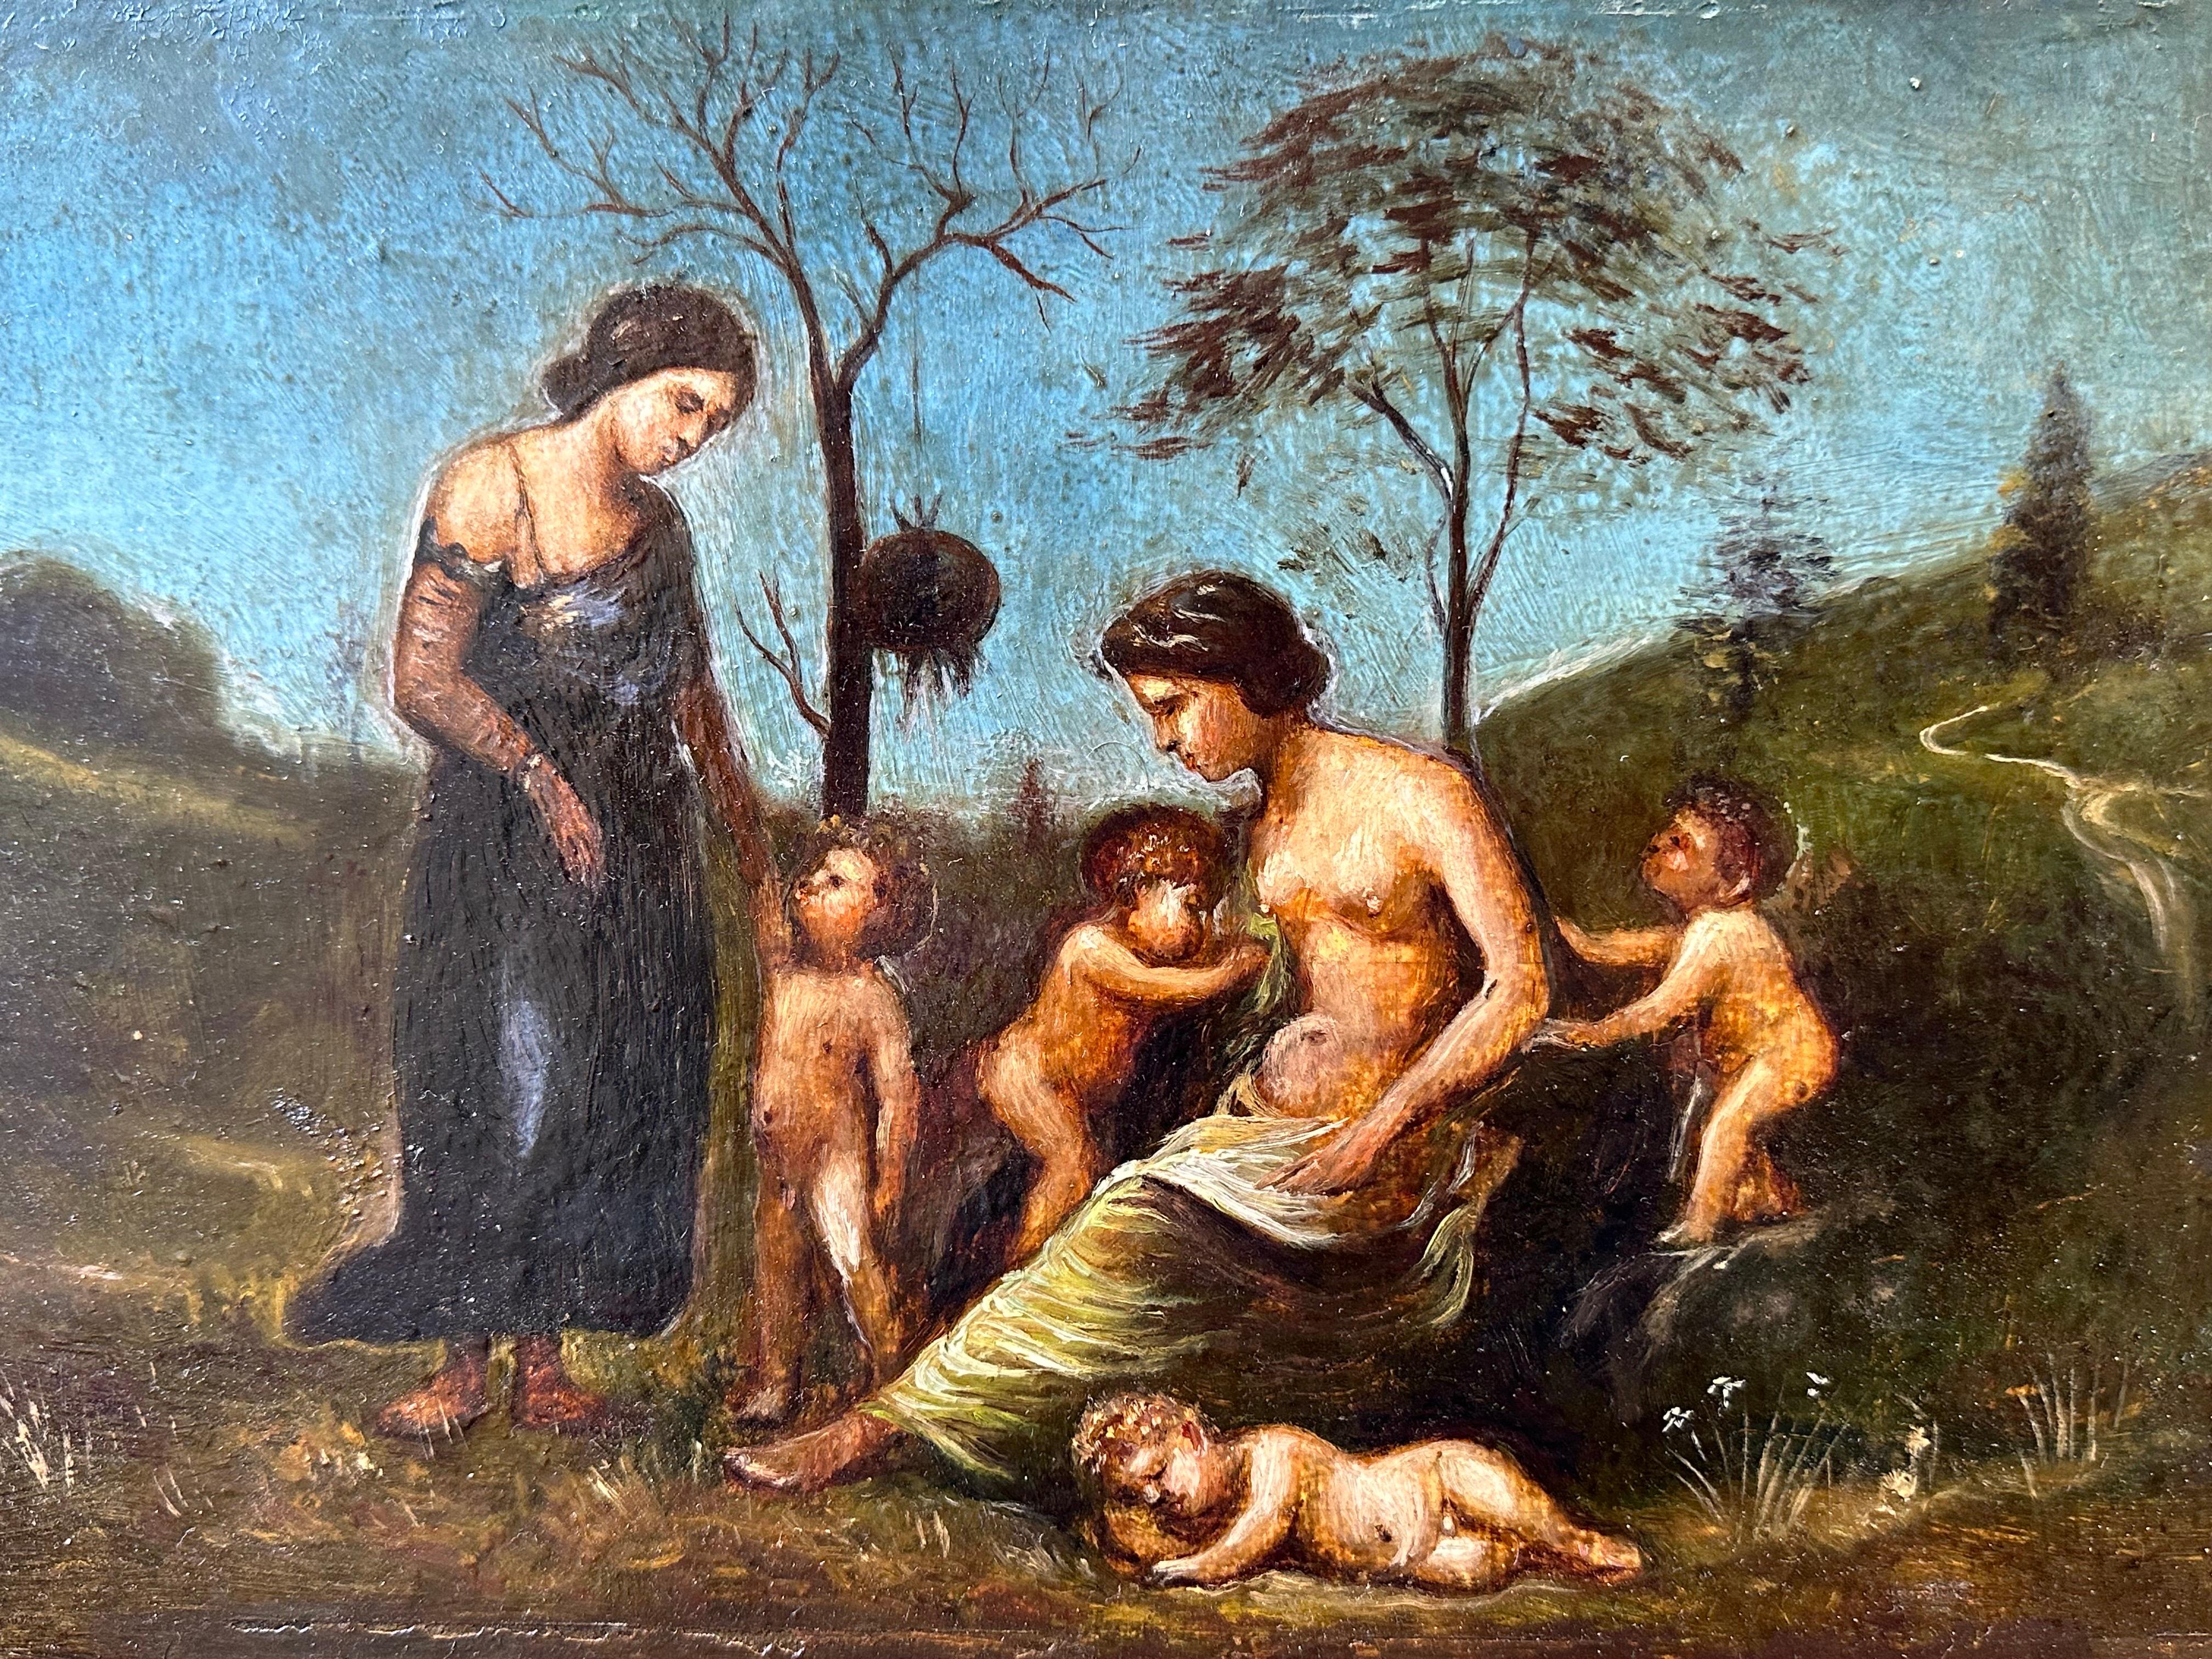 Italian 18th Century Figurative Painting – Sehr schönes italienisches Ölgemälde des 18. Jahrhunderts Aktfiguren in klassischer Landschaft